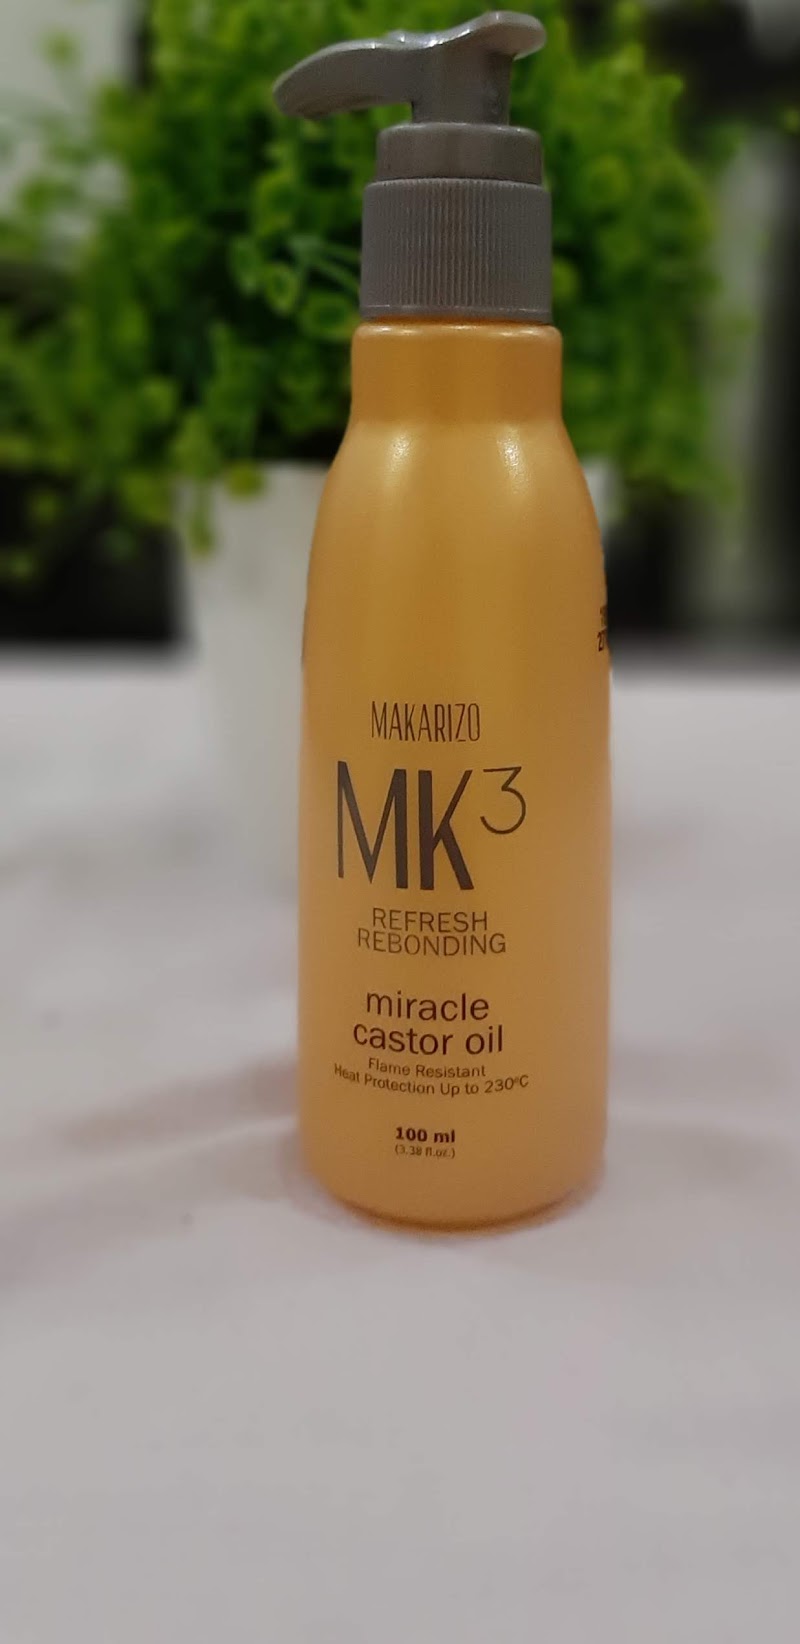 Review : Makarizo MK3 Refresh Rebonding Miracle Castor Oil